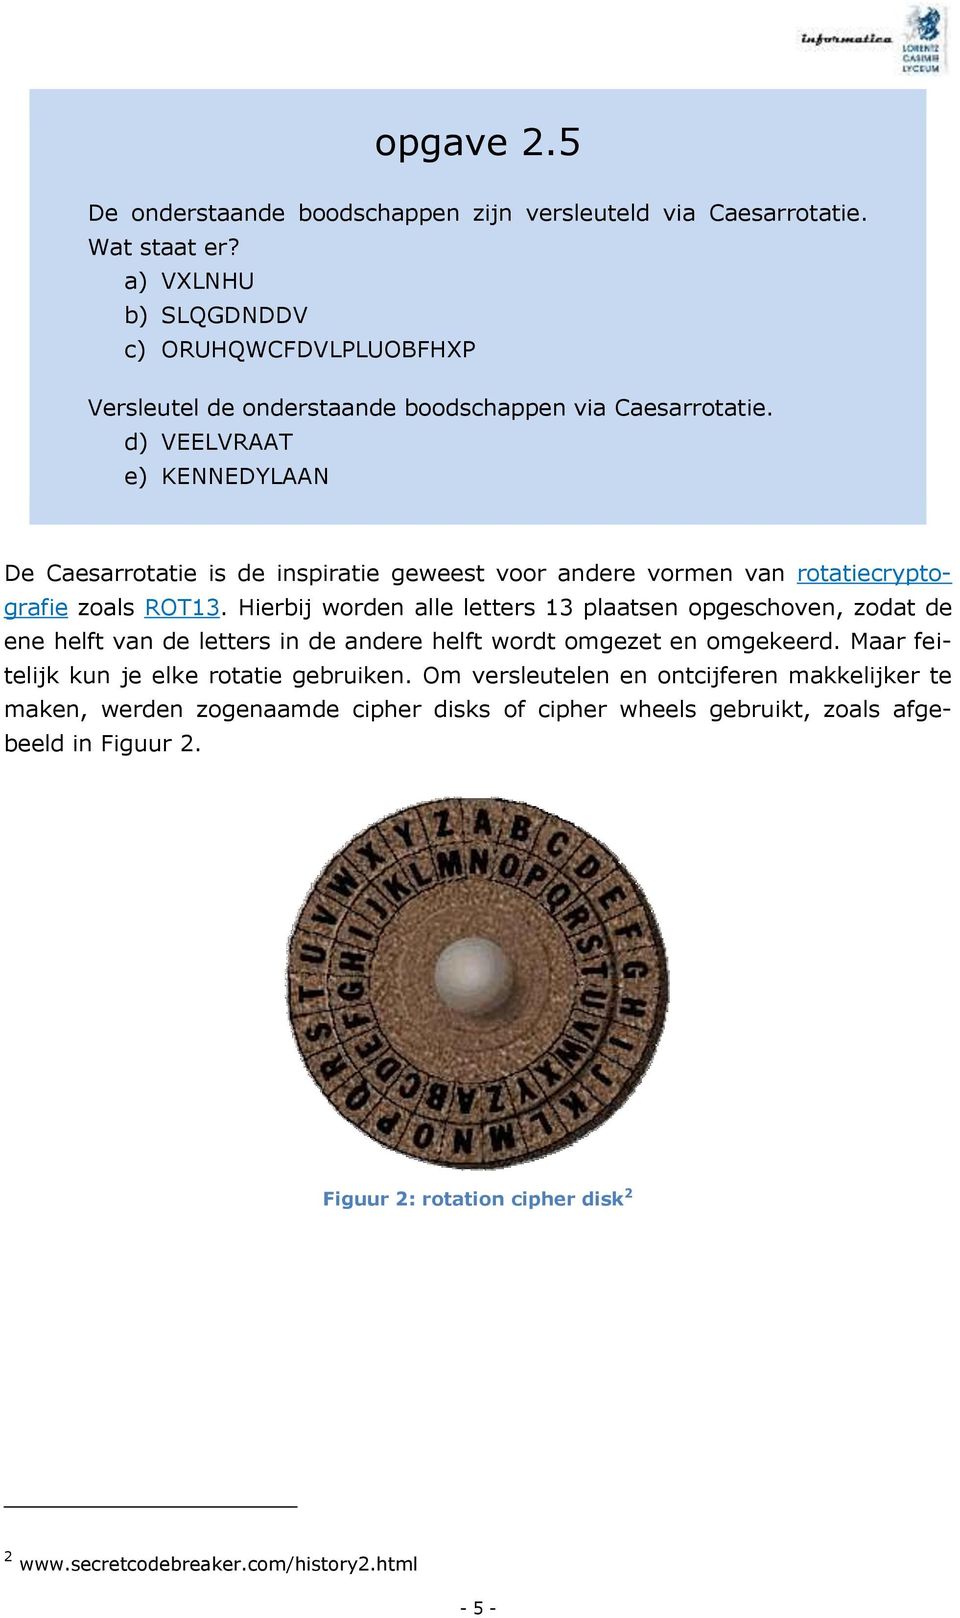 d) VEELVRAAT e) KENNEDYLAAN De Caesarrotatie is de inspiratie geweest voor andere vormen van rotatiecryptografie zoals ROT13.